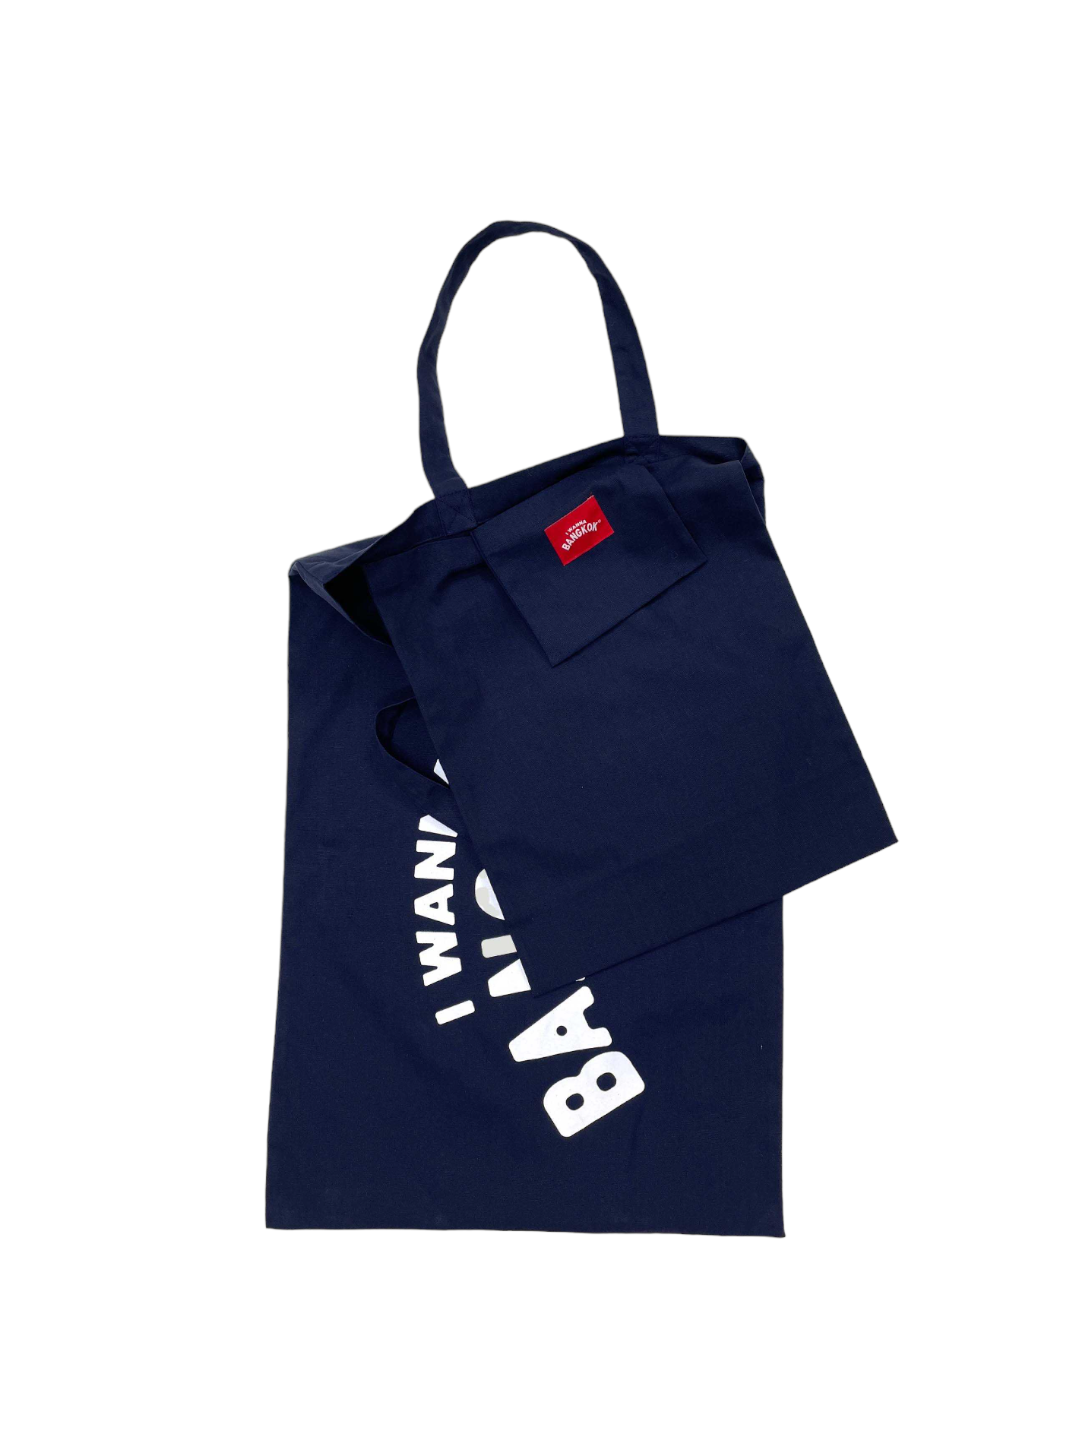 Kangaroo Bag (Navy)